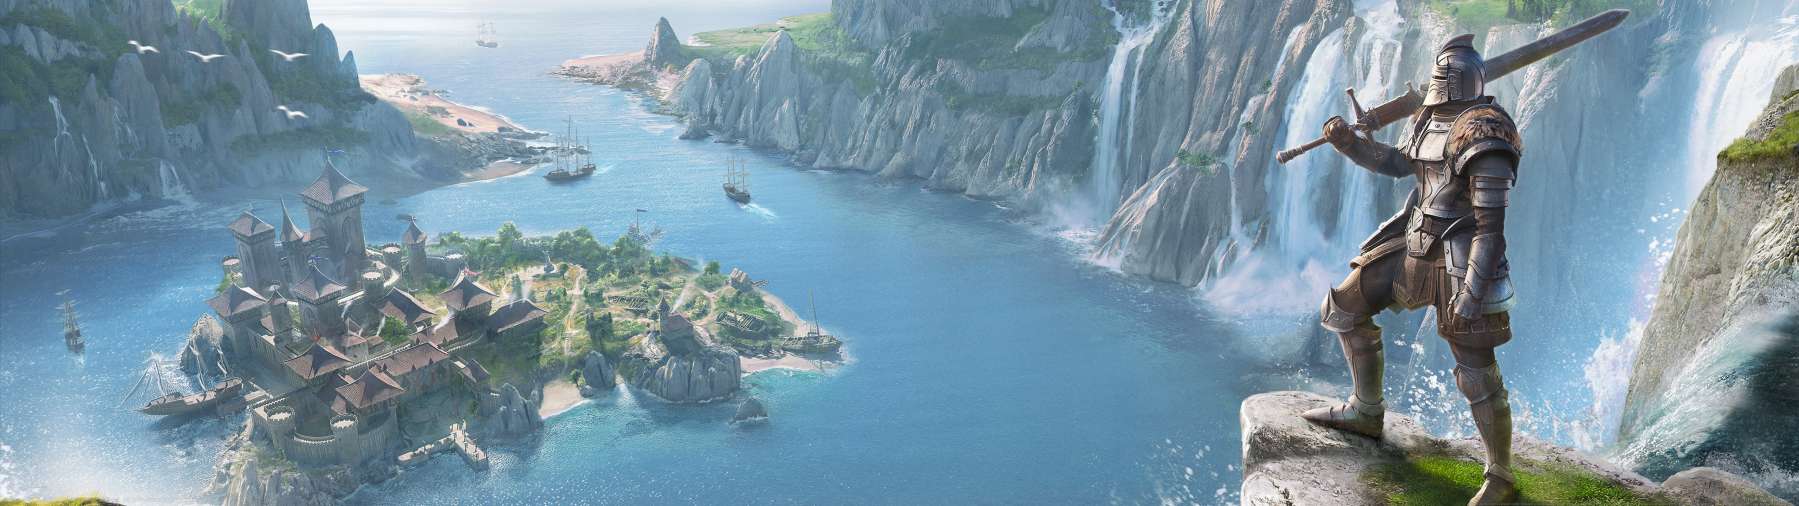 The Elder Scrolls Online: High Isle superwide achtergrond 01